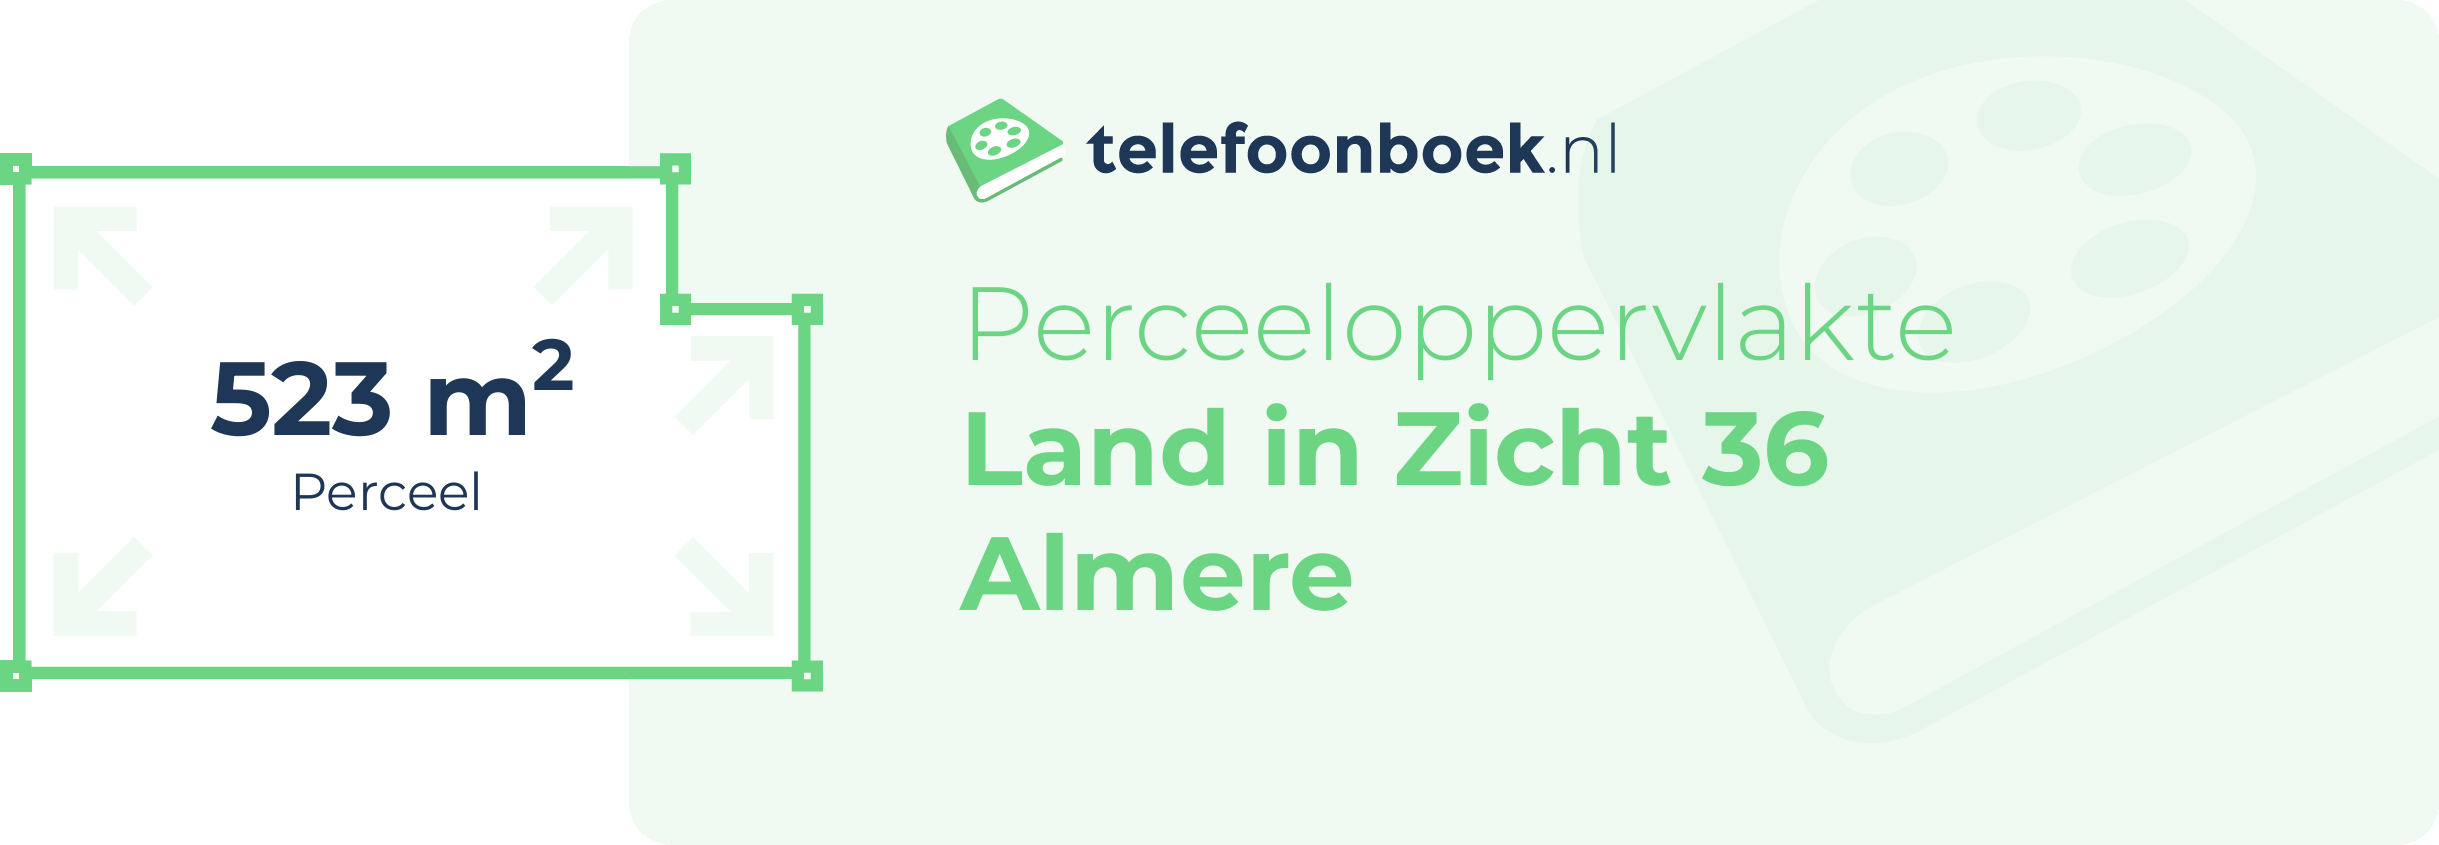 Perceeloppervlakte Land In Zicht 36 Almere